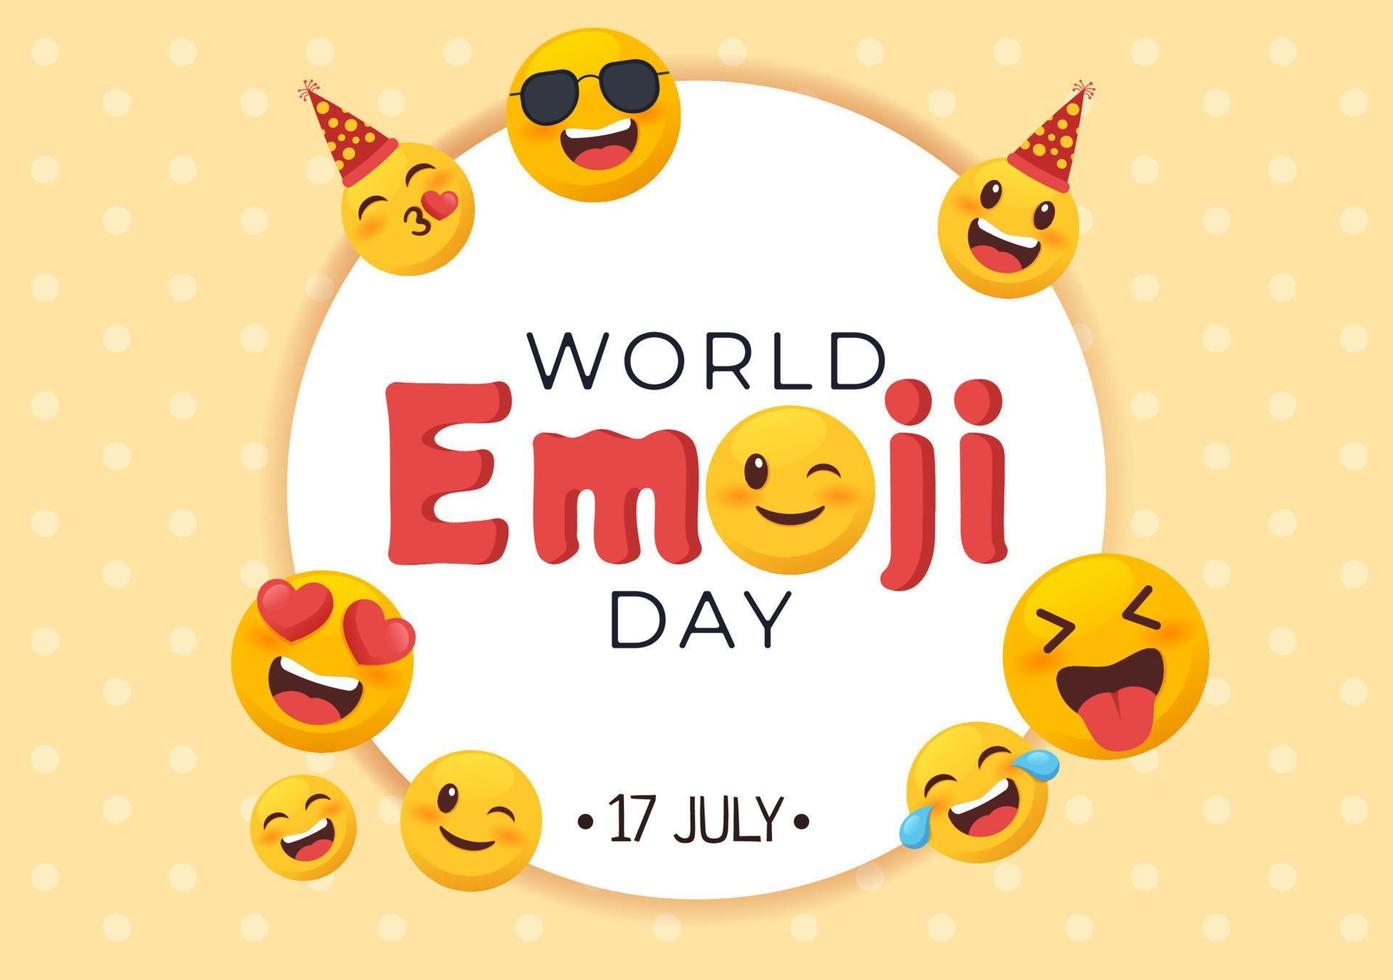 Welt-Emoji-Tag-Feier mit Veranstaltungen und Produktveröffentlichungen in verschiedenen niedlichen Cartoon-Formen mit Gesichtsausdruck in flacher Hintergrundillustration vektor